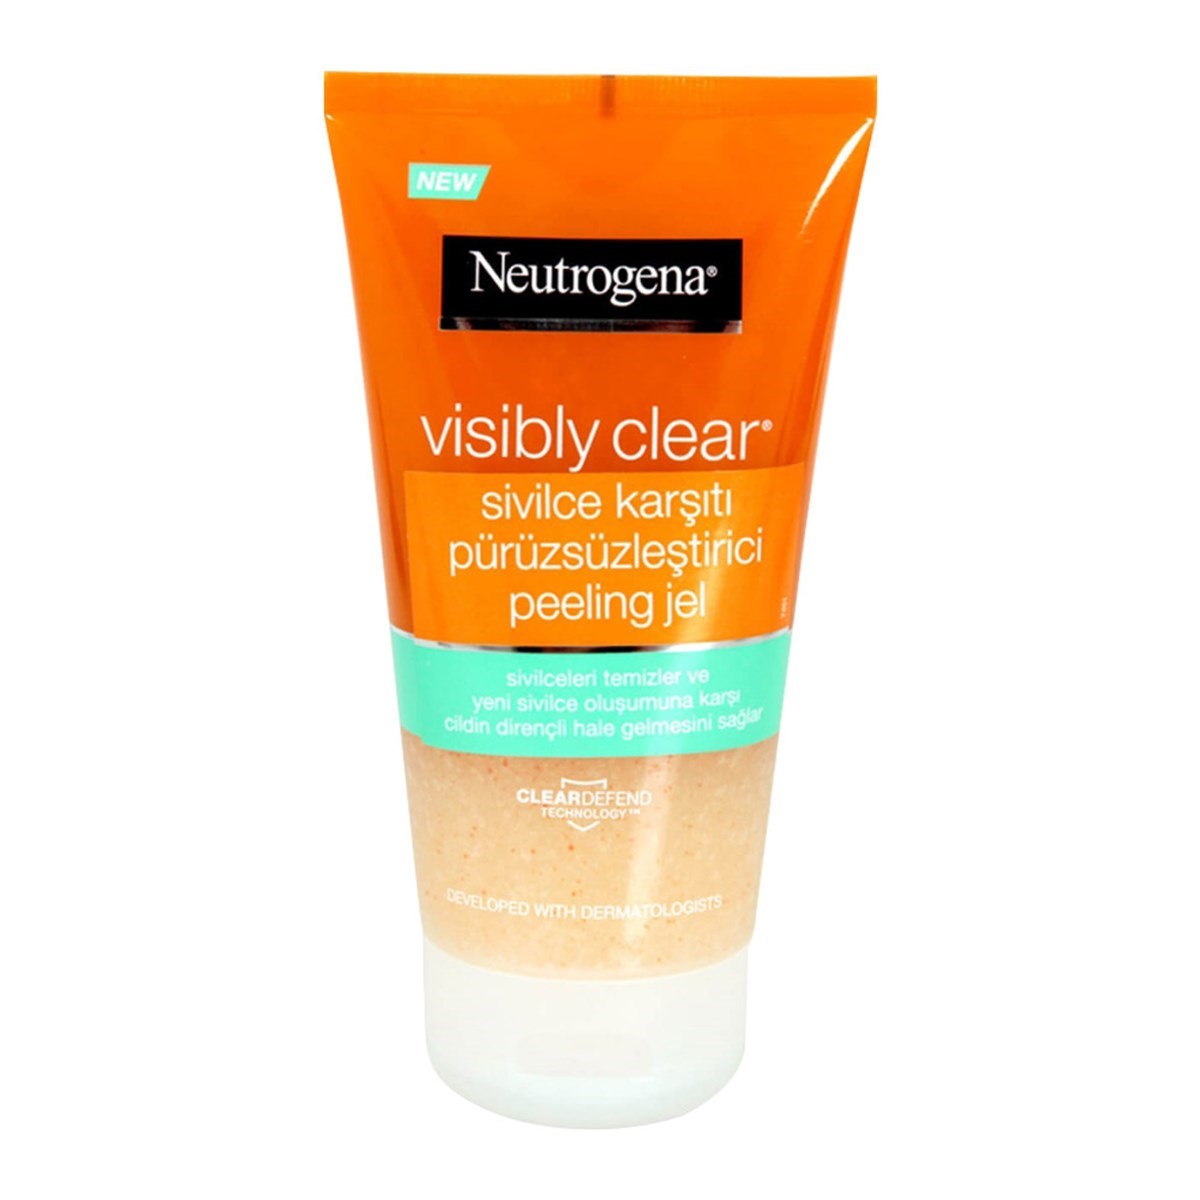 Neutrogena Visibly Clear Arındırıcı Yüz Temizleme Jeli 150 ml Fiyatları |  Dermosiparis.com